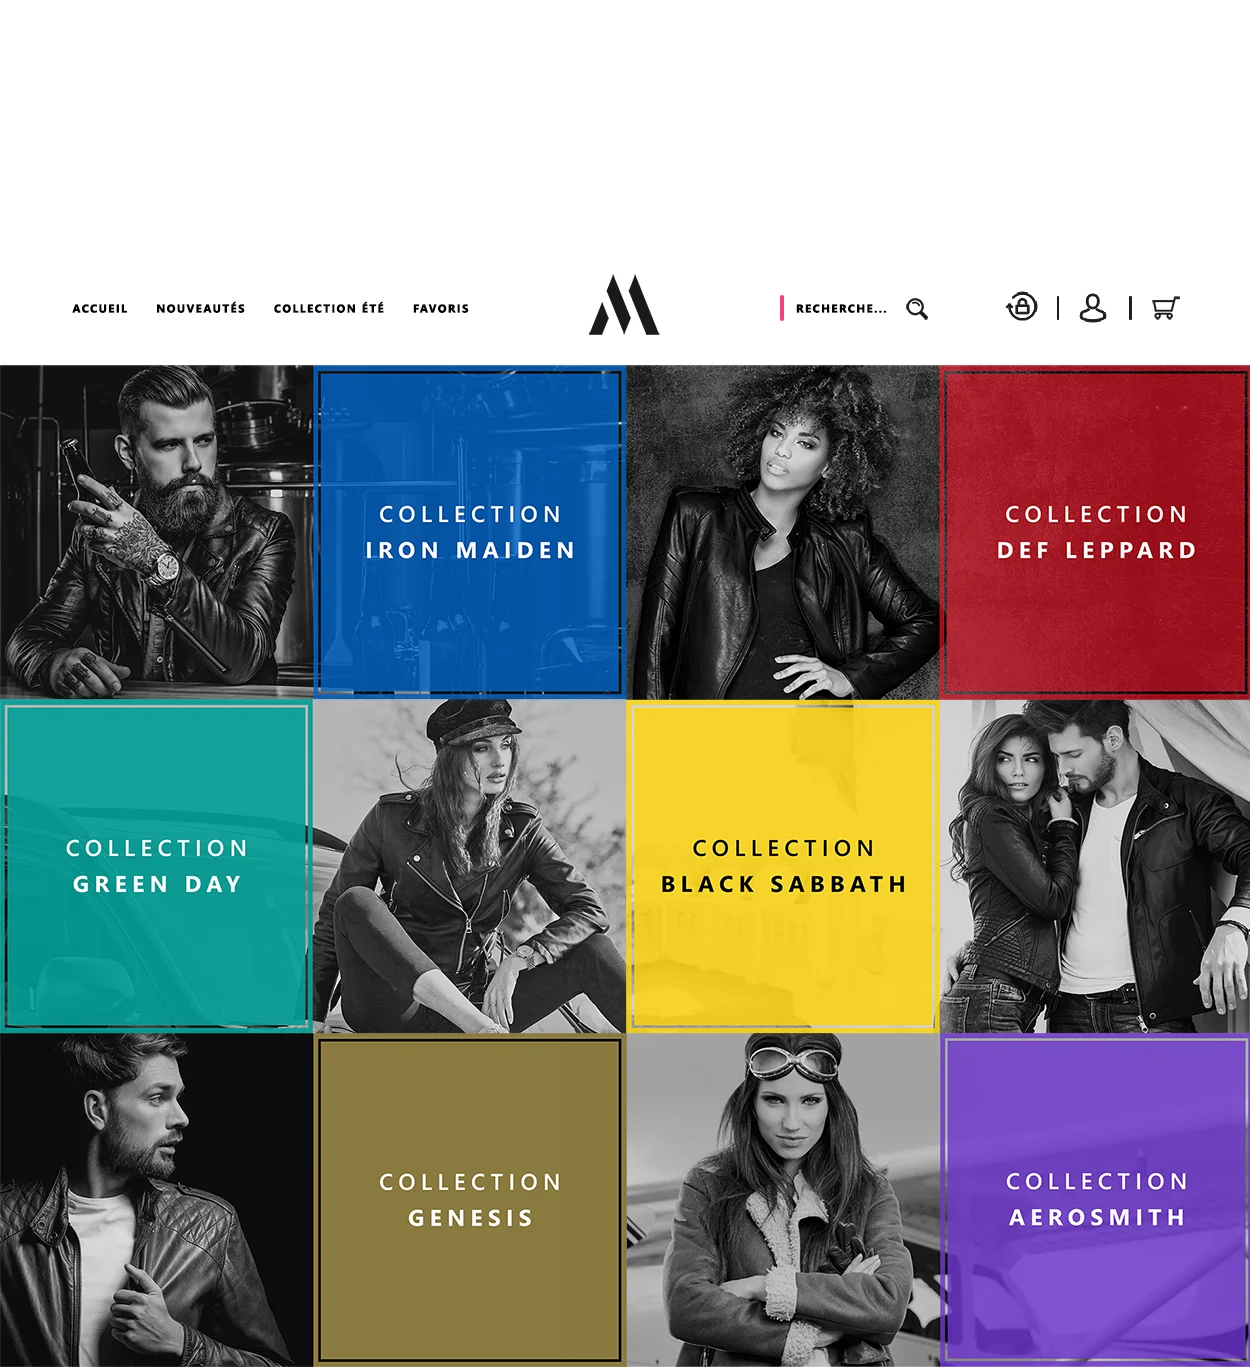 Aperçu de la Page Nouvelle Collection des Vestes Madison lors de la conception de son e-shop